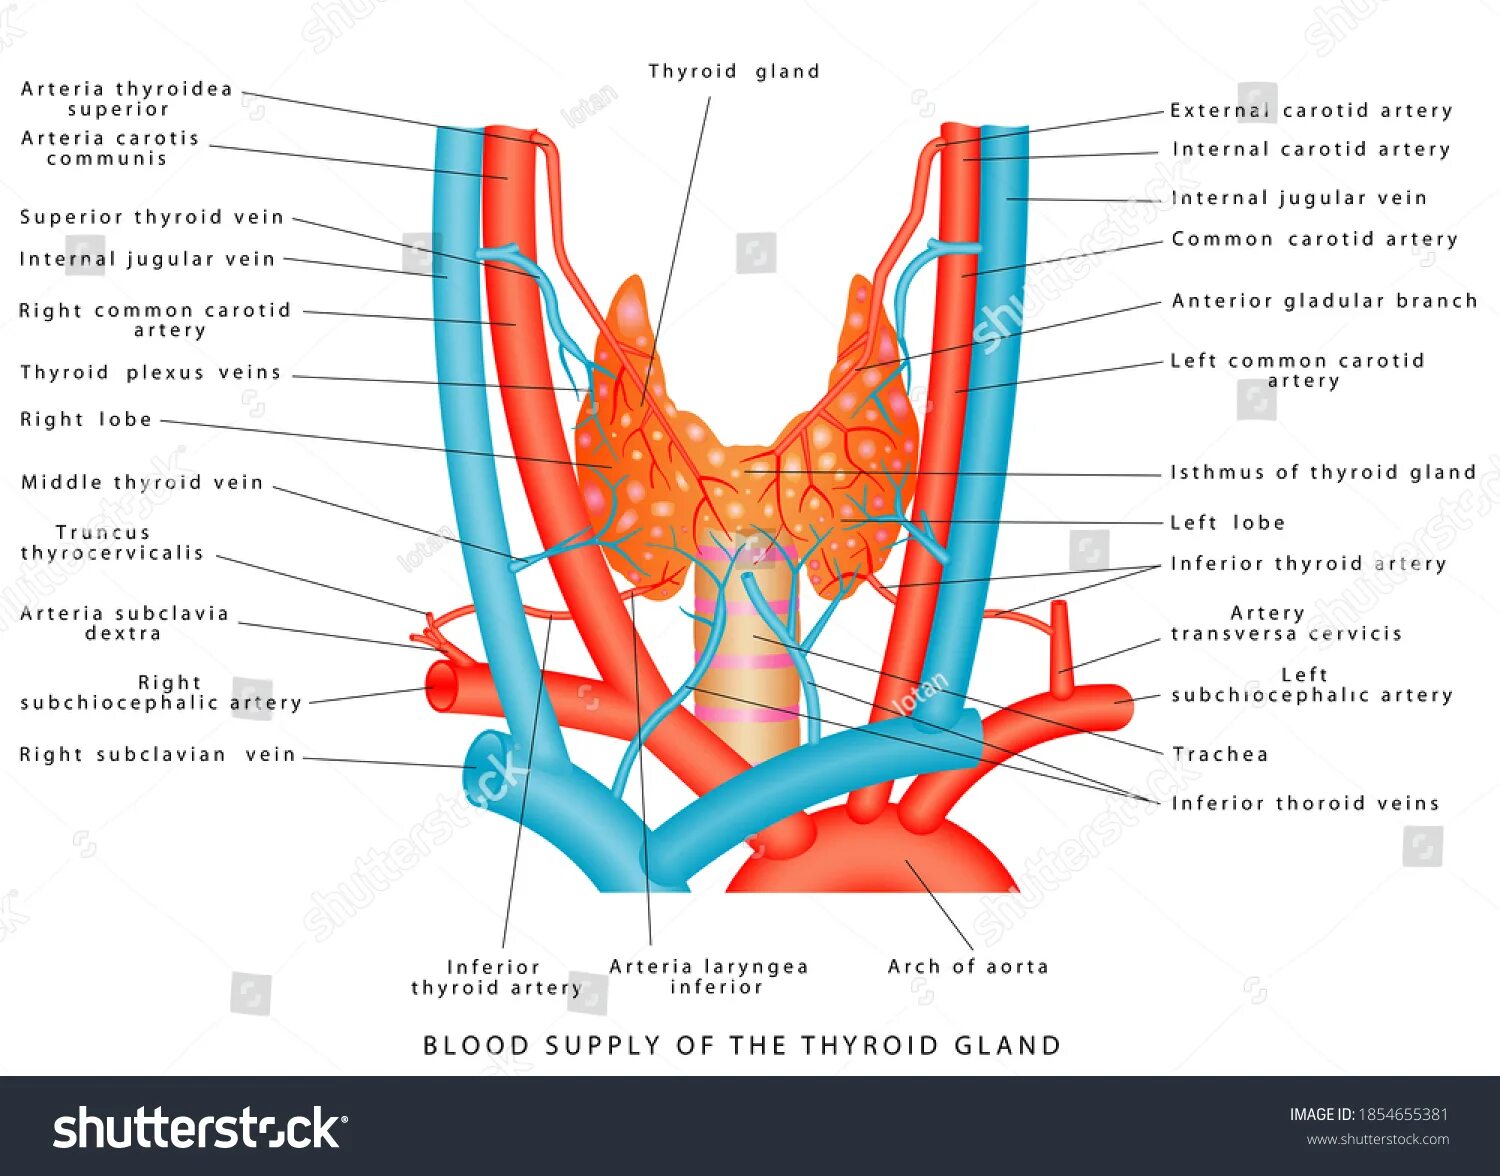 Артерии щитовидной железы анатомия. Кровоснабжение щитовидной железы анатомия. Артерии щитовидной железы схема. Кровоснабжение щитовидной железы топографическая анатомия.